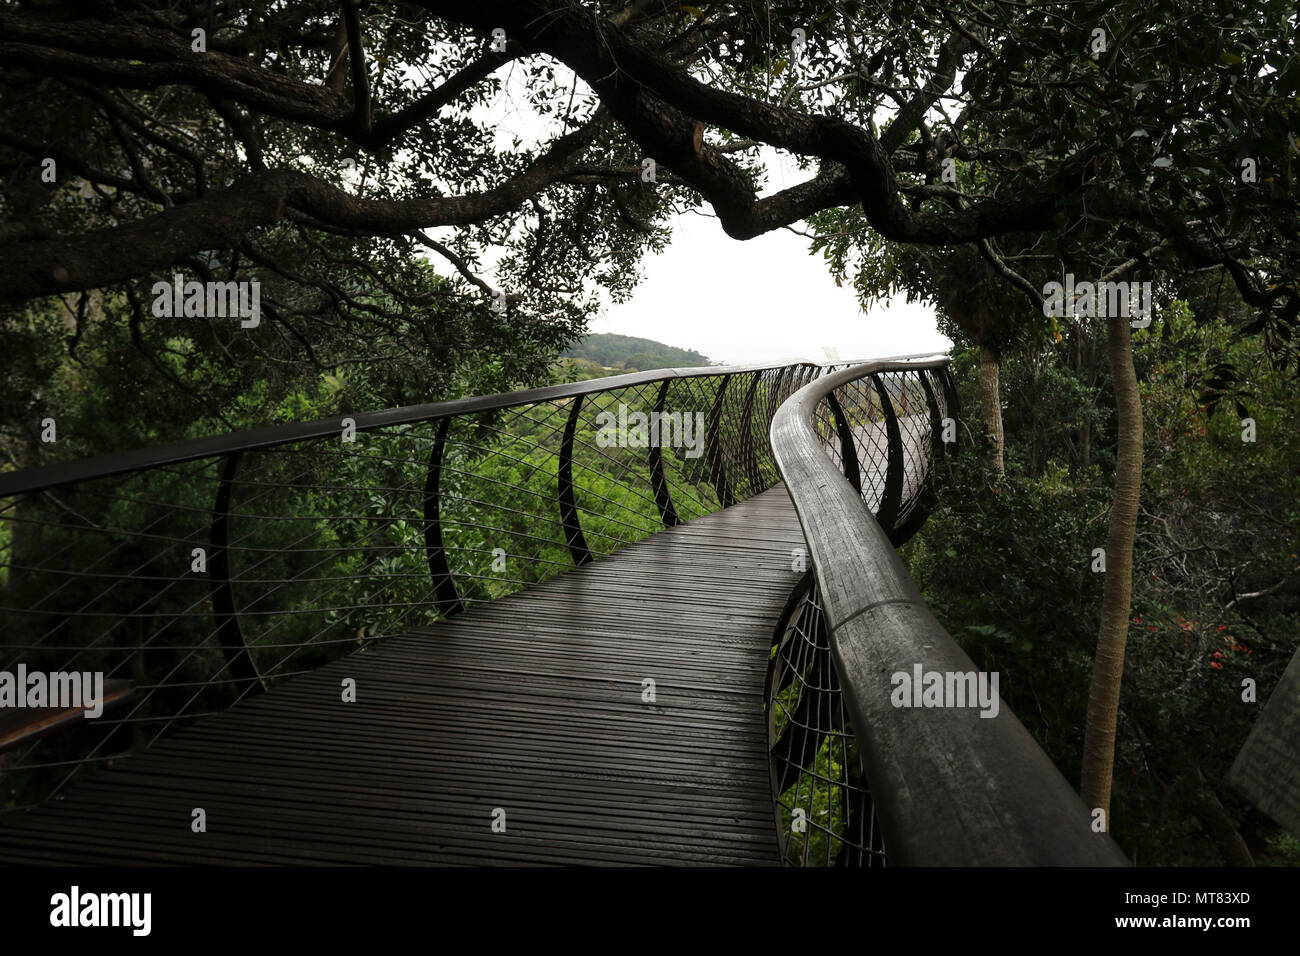 Passerella in legno attraverso gli alberi, Kirstenbosch Botanic Gardens, Città del Capo, Sud Africa Foto Stock